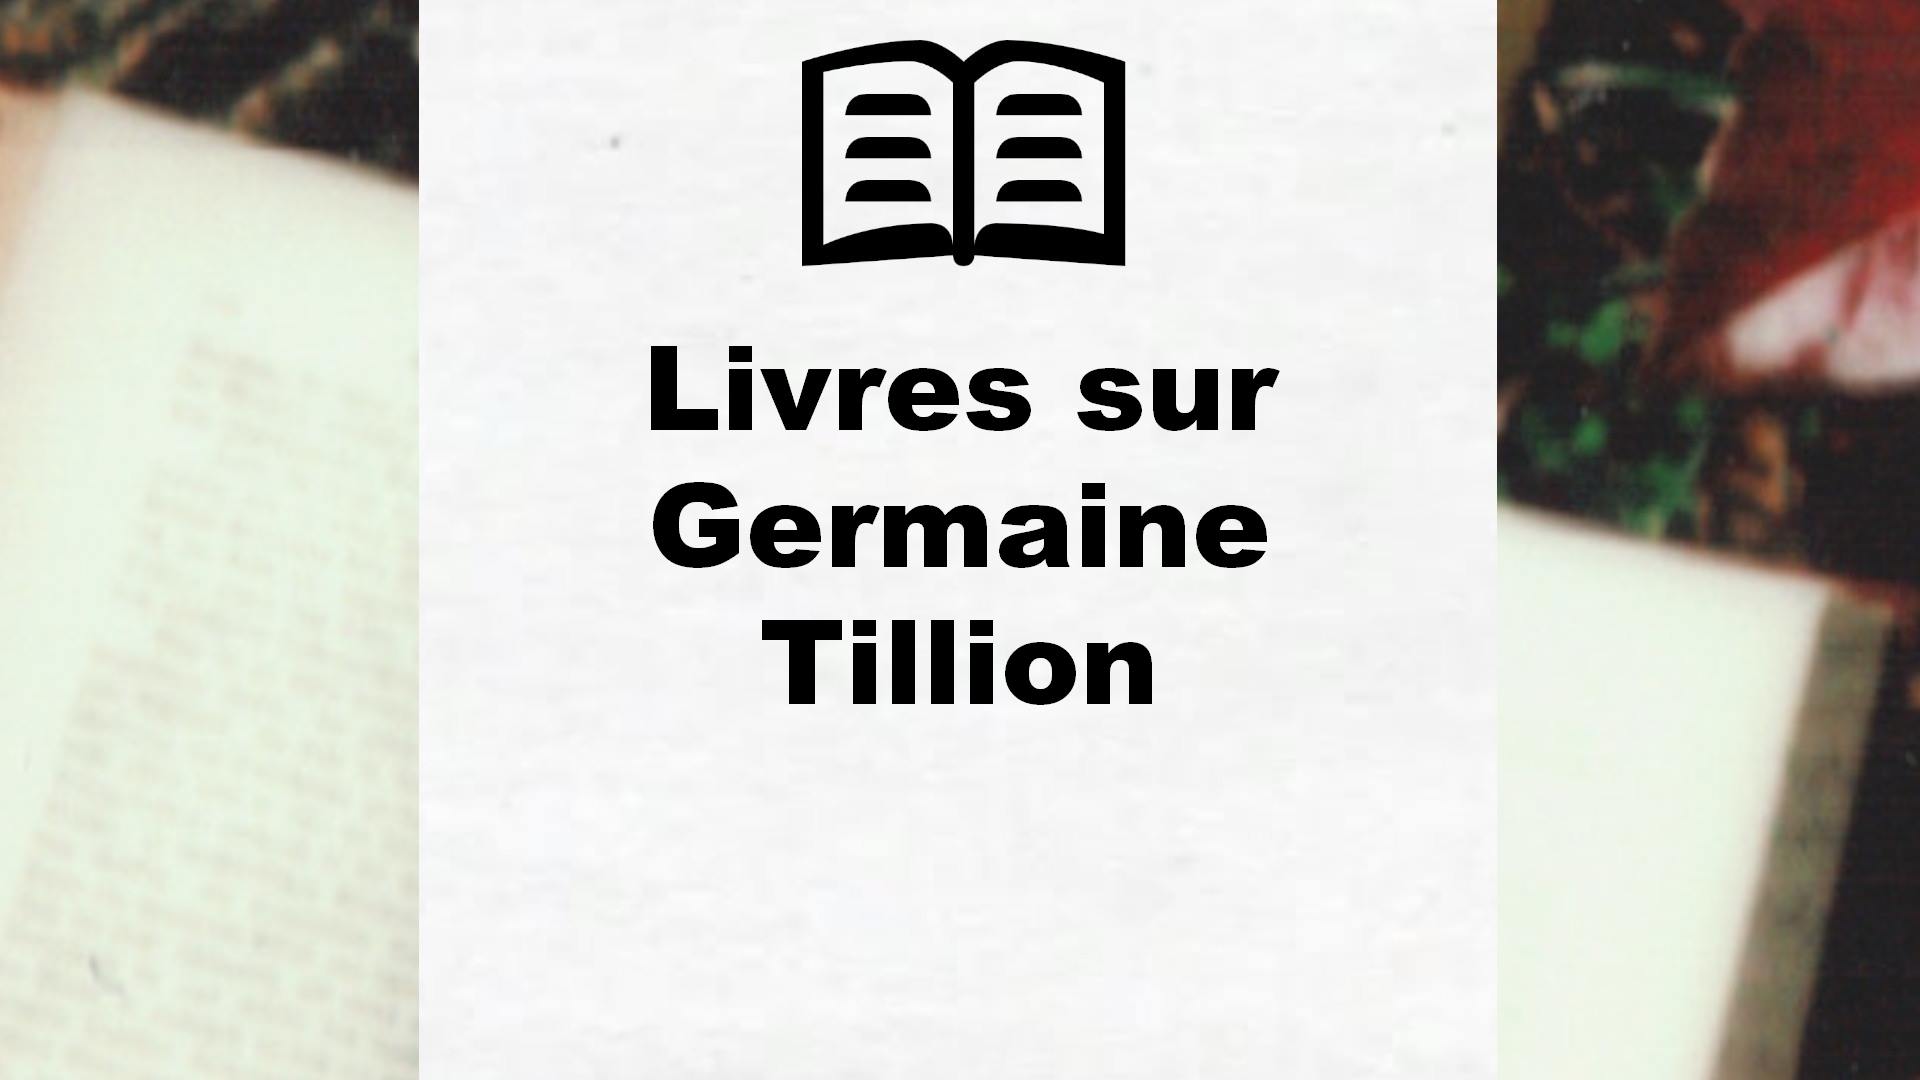 Livres sur Germaine Tillion